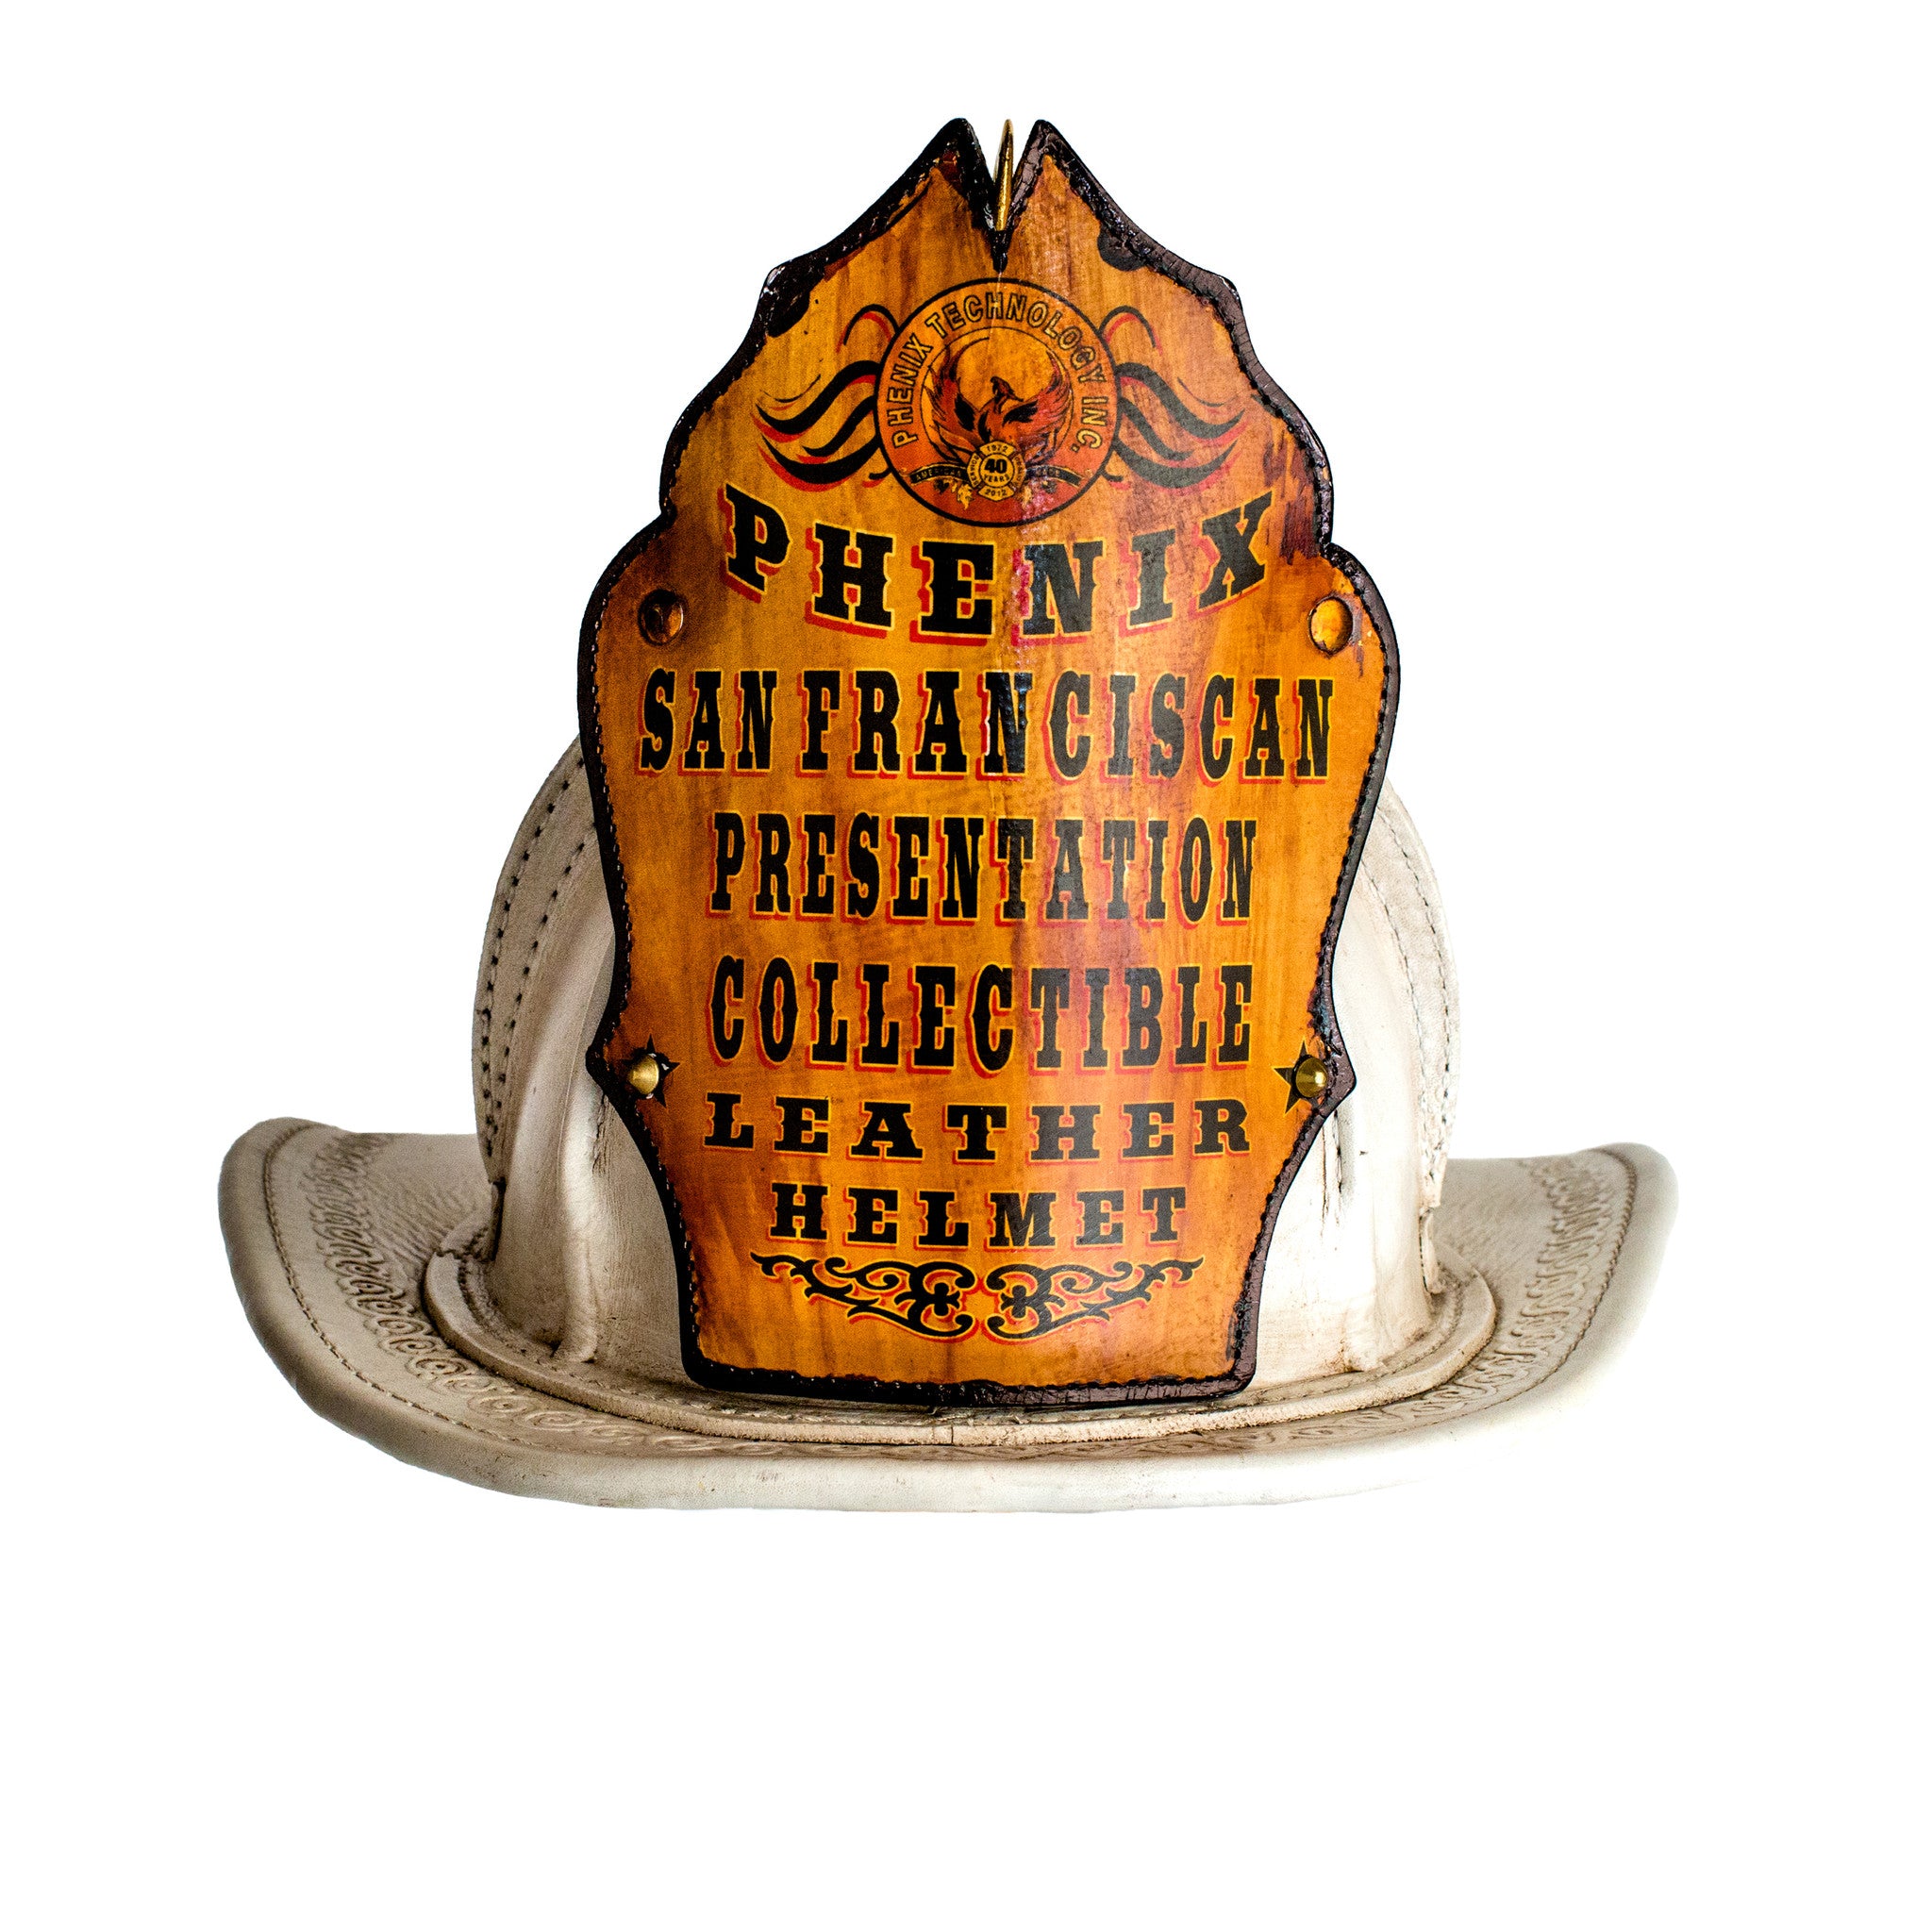 Casco de bombero. Francia, ca. 1900. - Artsvalua